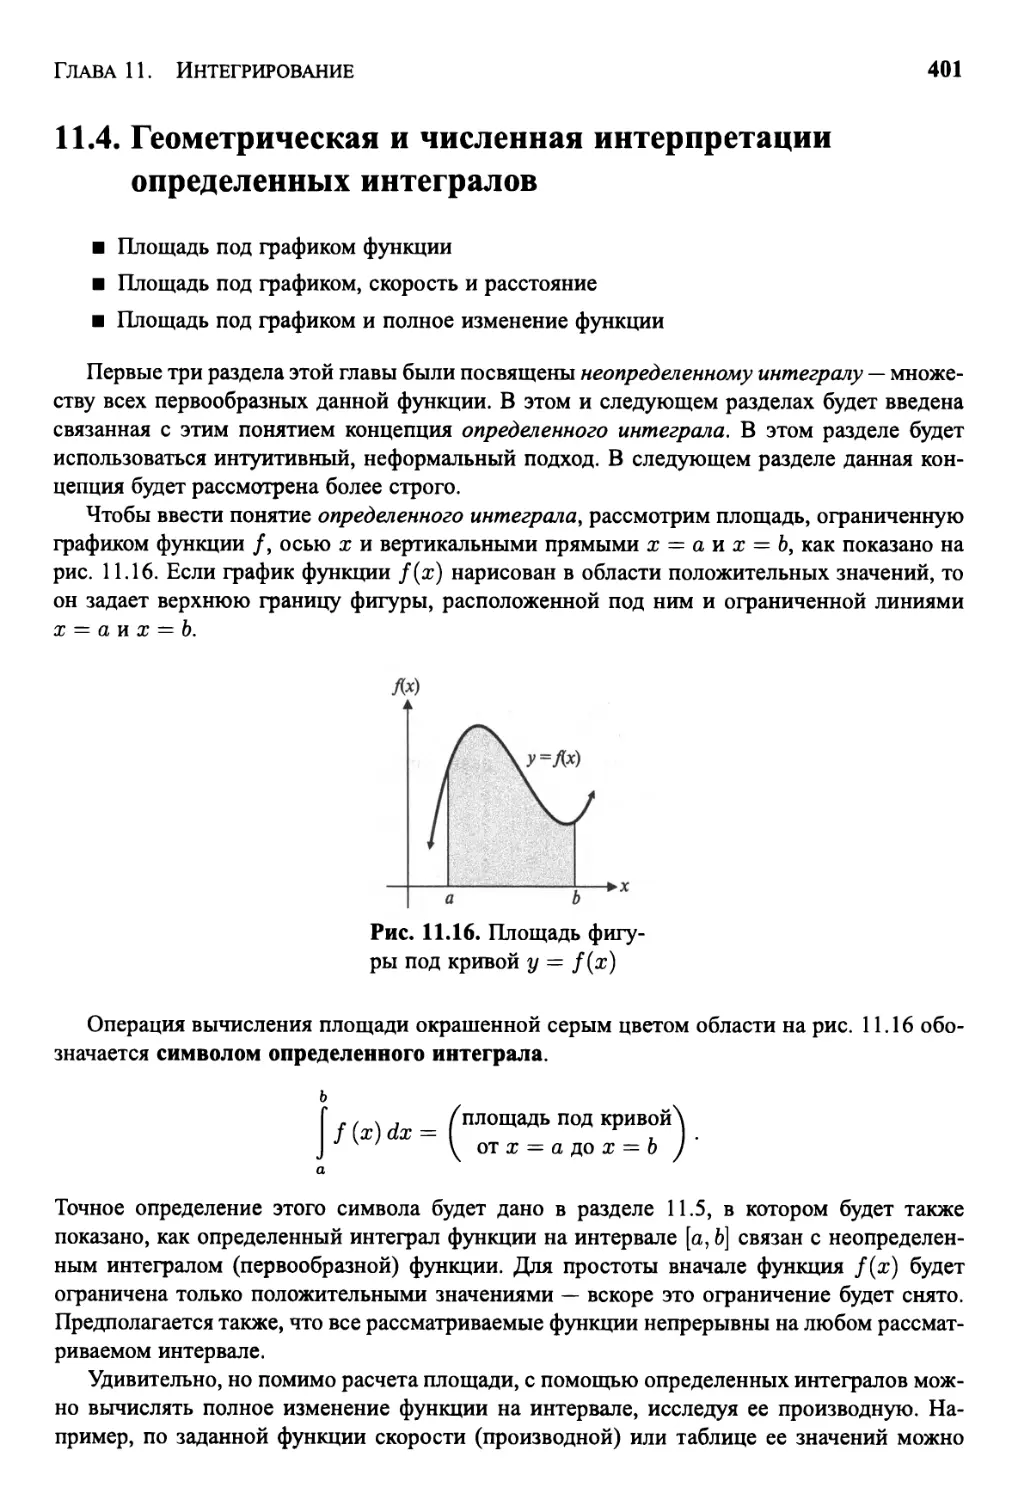 11.4 Геометрическая и численная интерпретации определенных интегралов